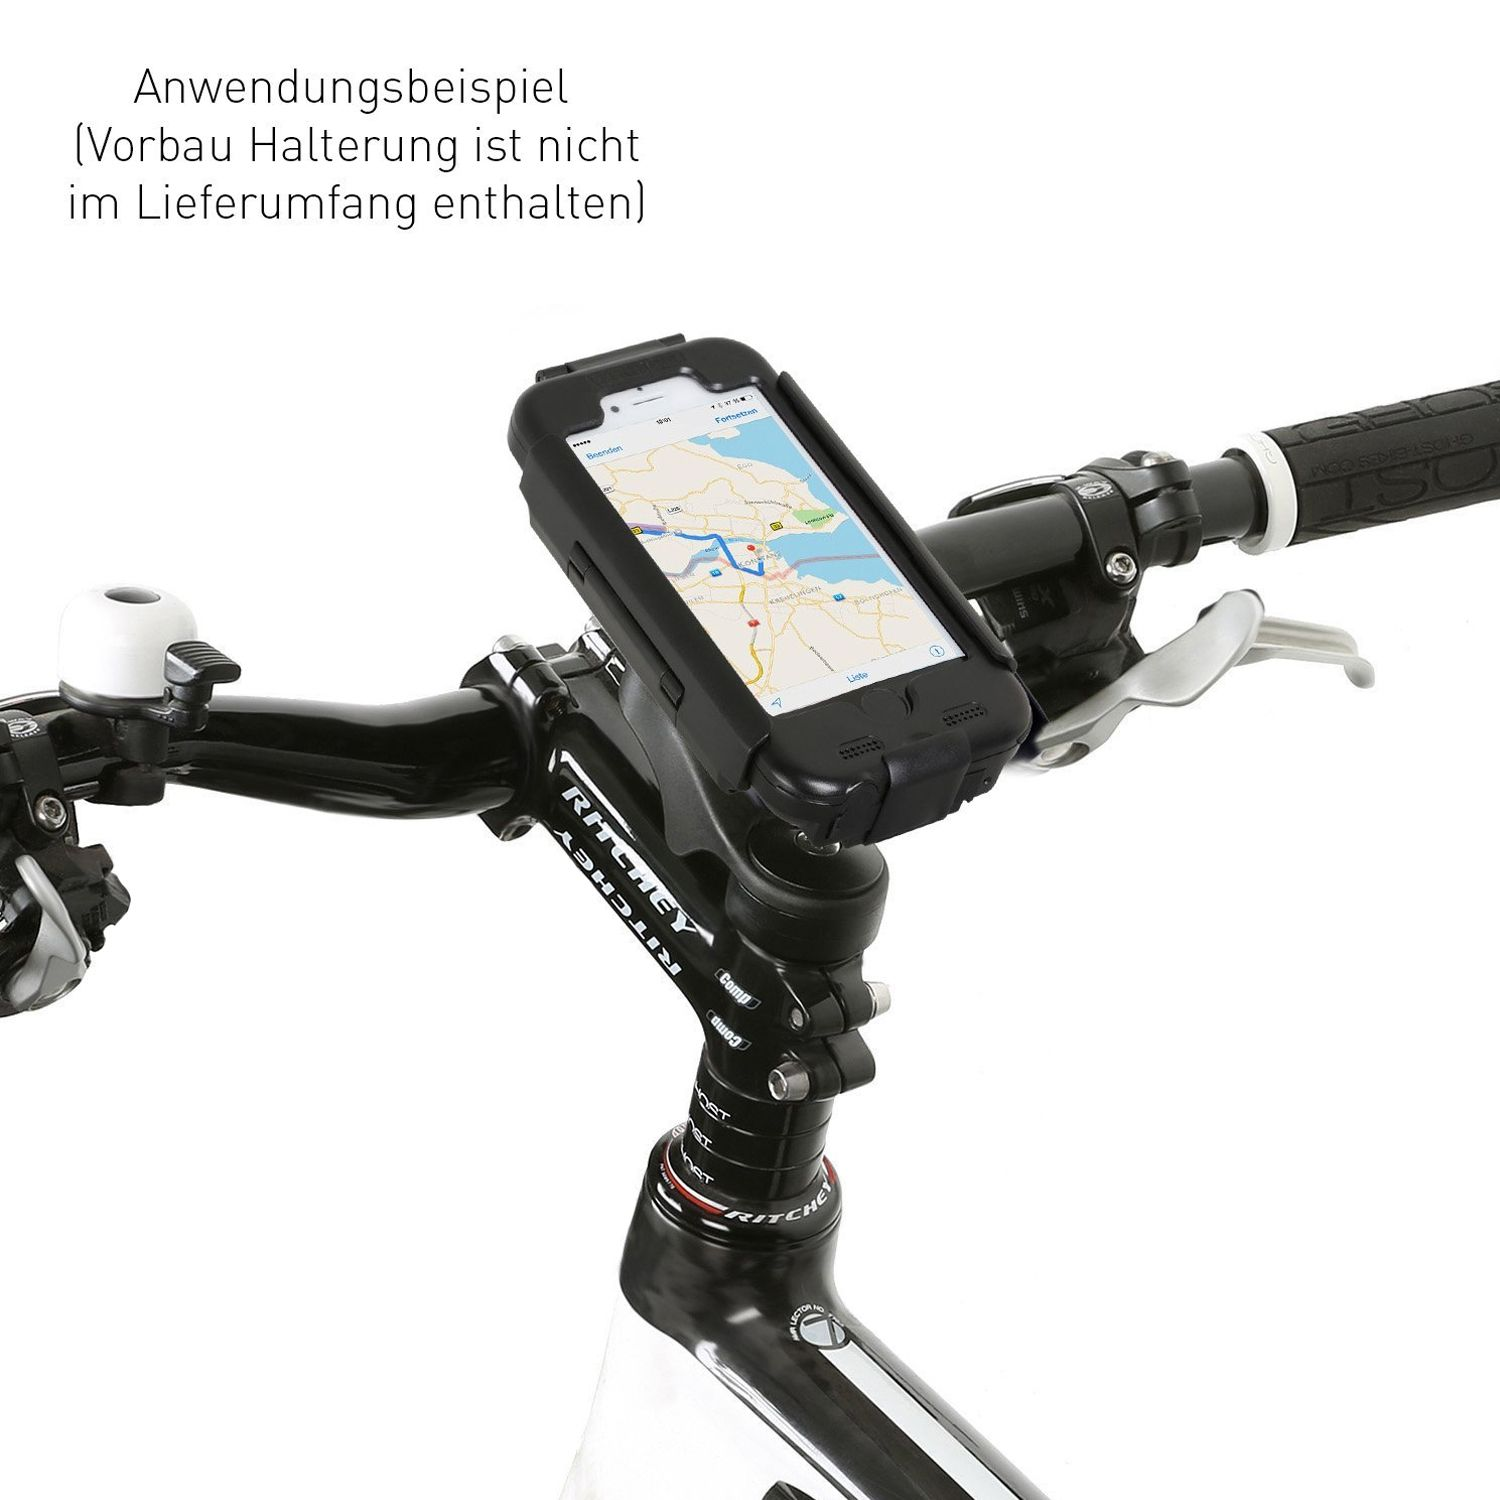 für Halterung Bike wasserdicht Vorbau - Fahrradhalterung CHILI Fahrradhalterung, / RainCase 6S Schutzhülle schwarz / iPhone WICKED Lenker 6